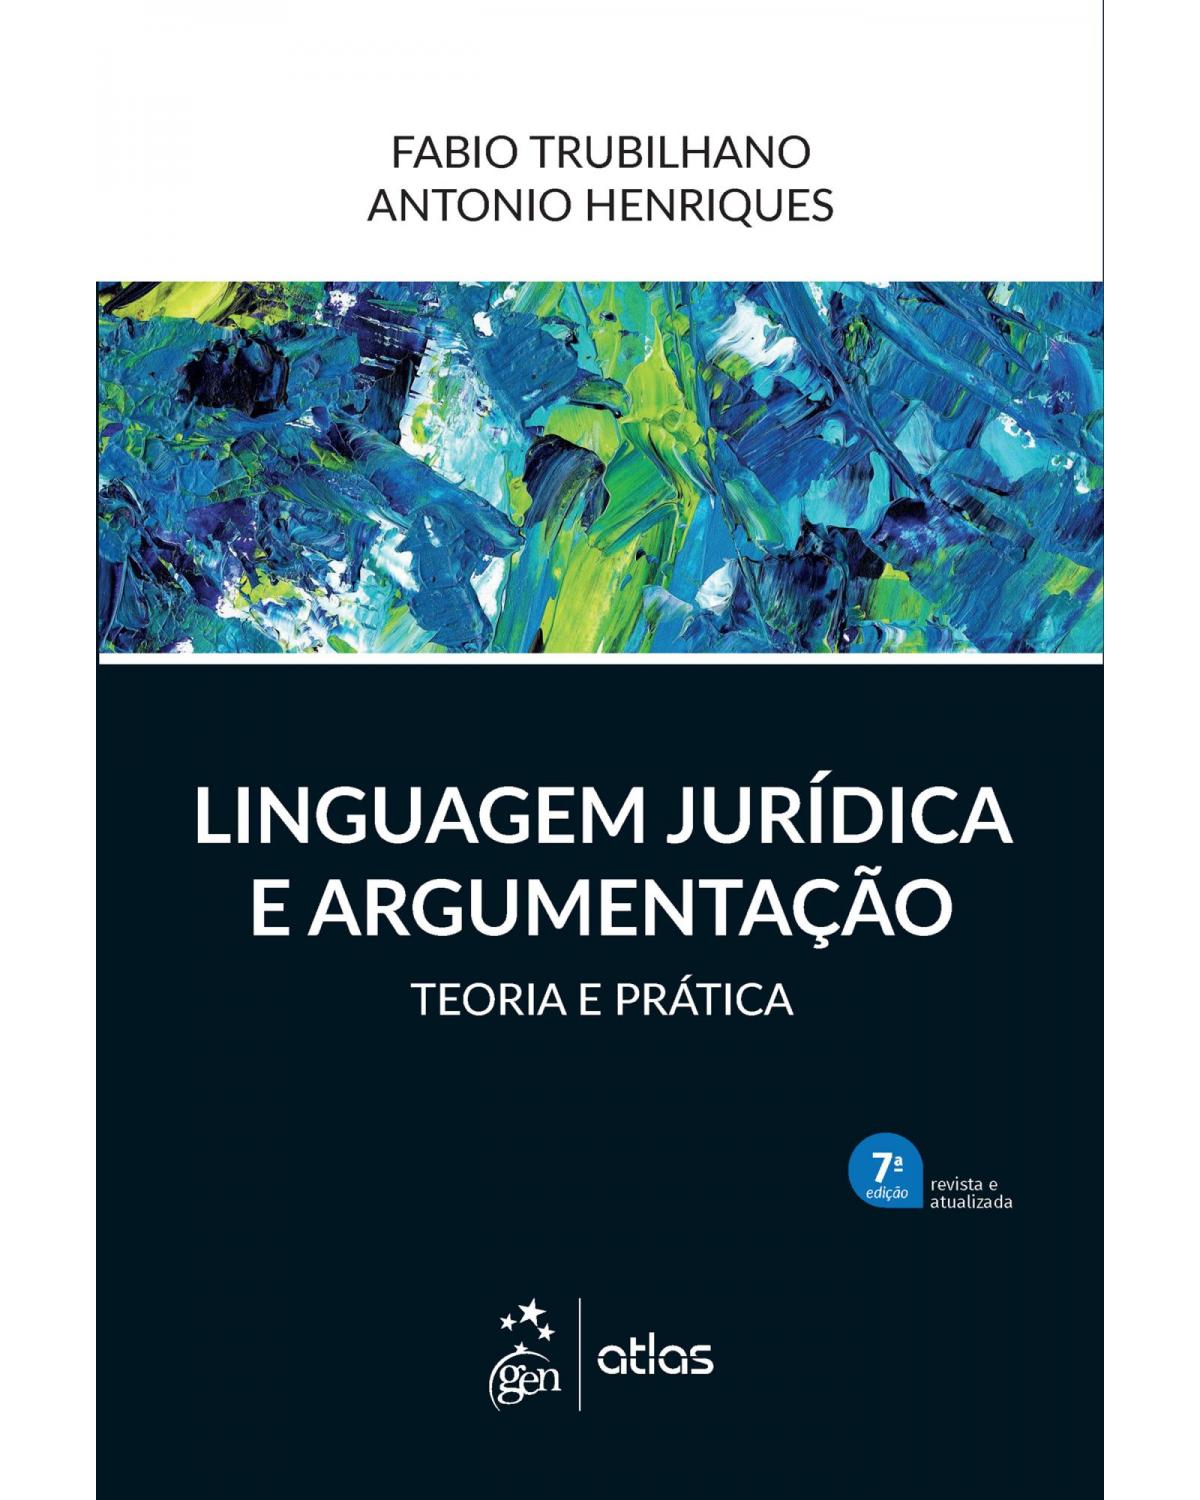 Linguagem jurídica e argumentação - Teoria e prática - 7ª Edição | 2021